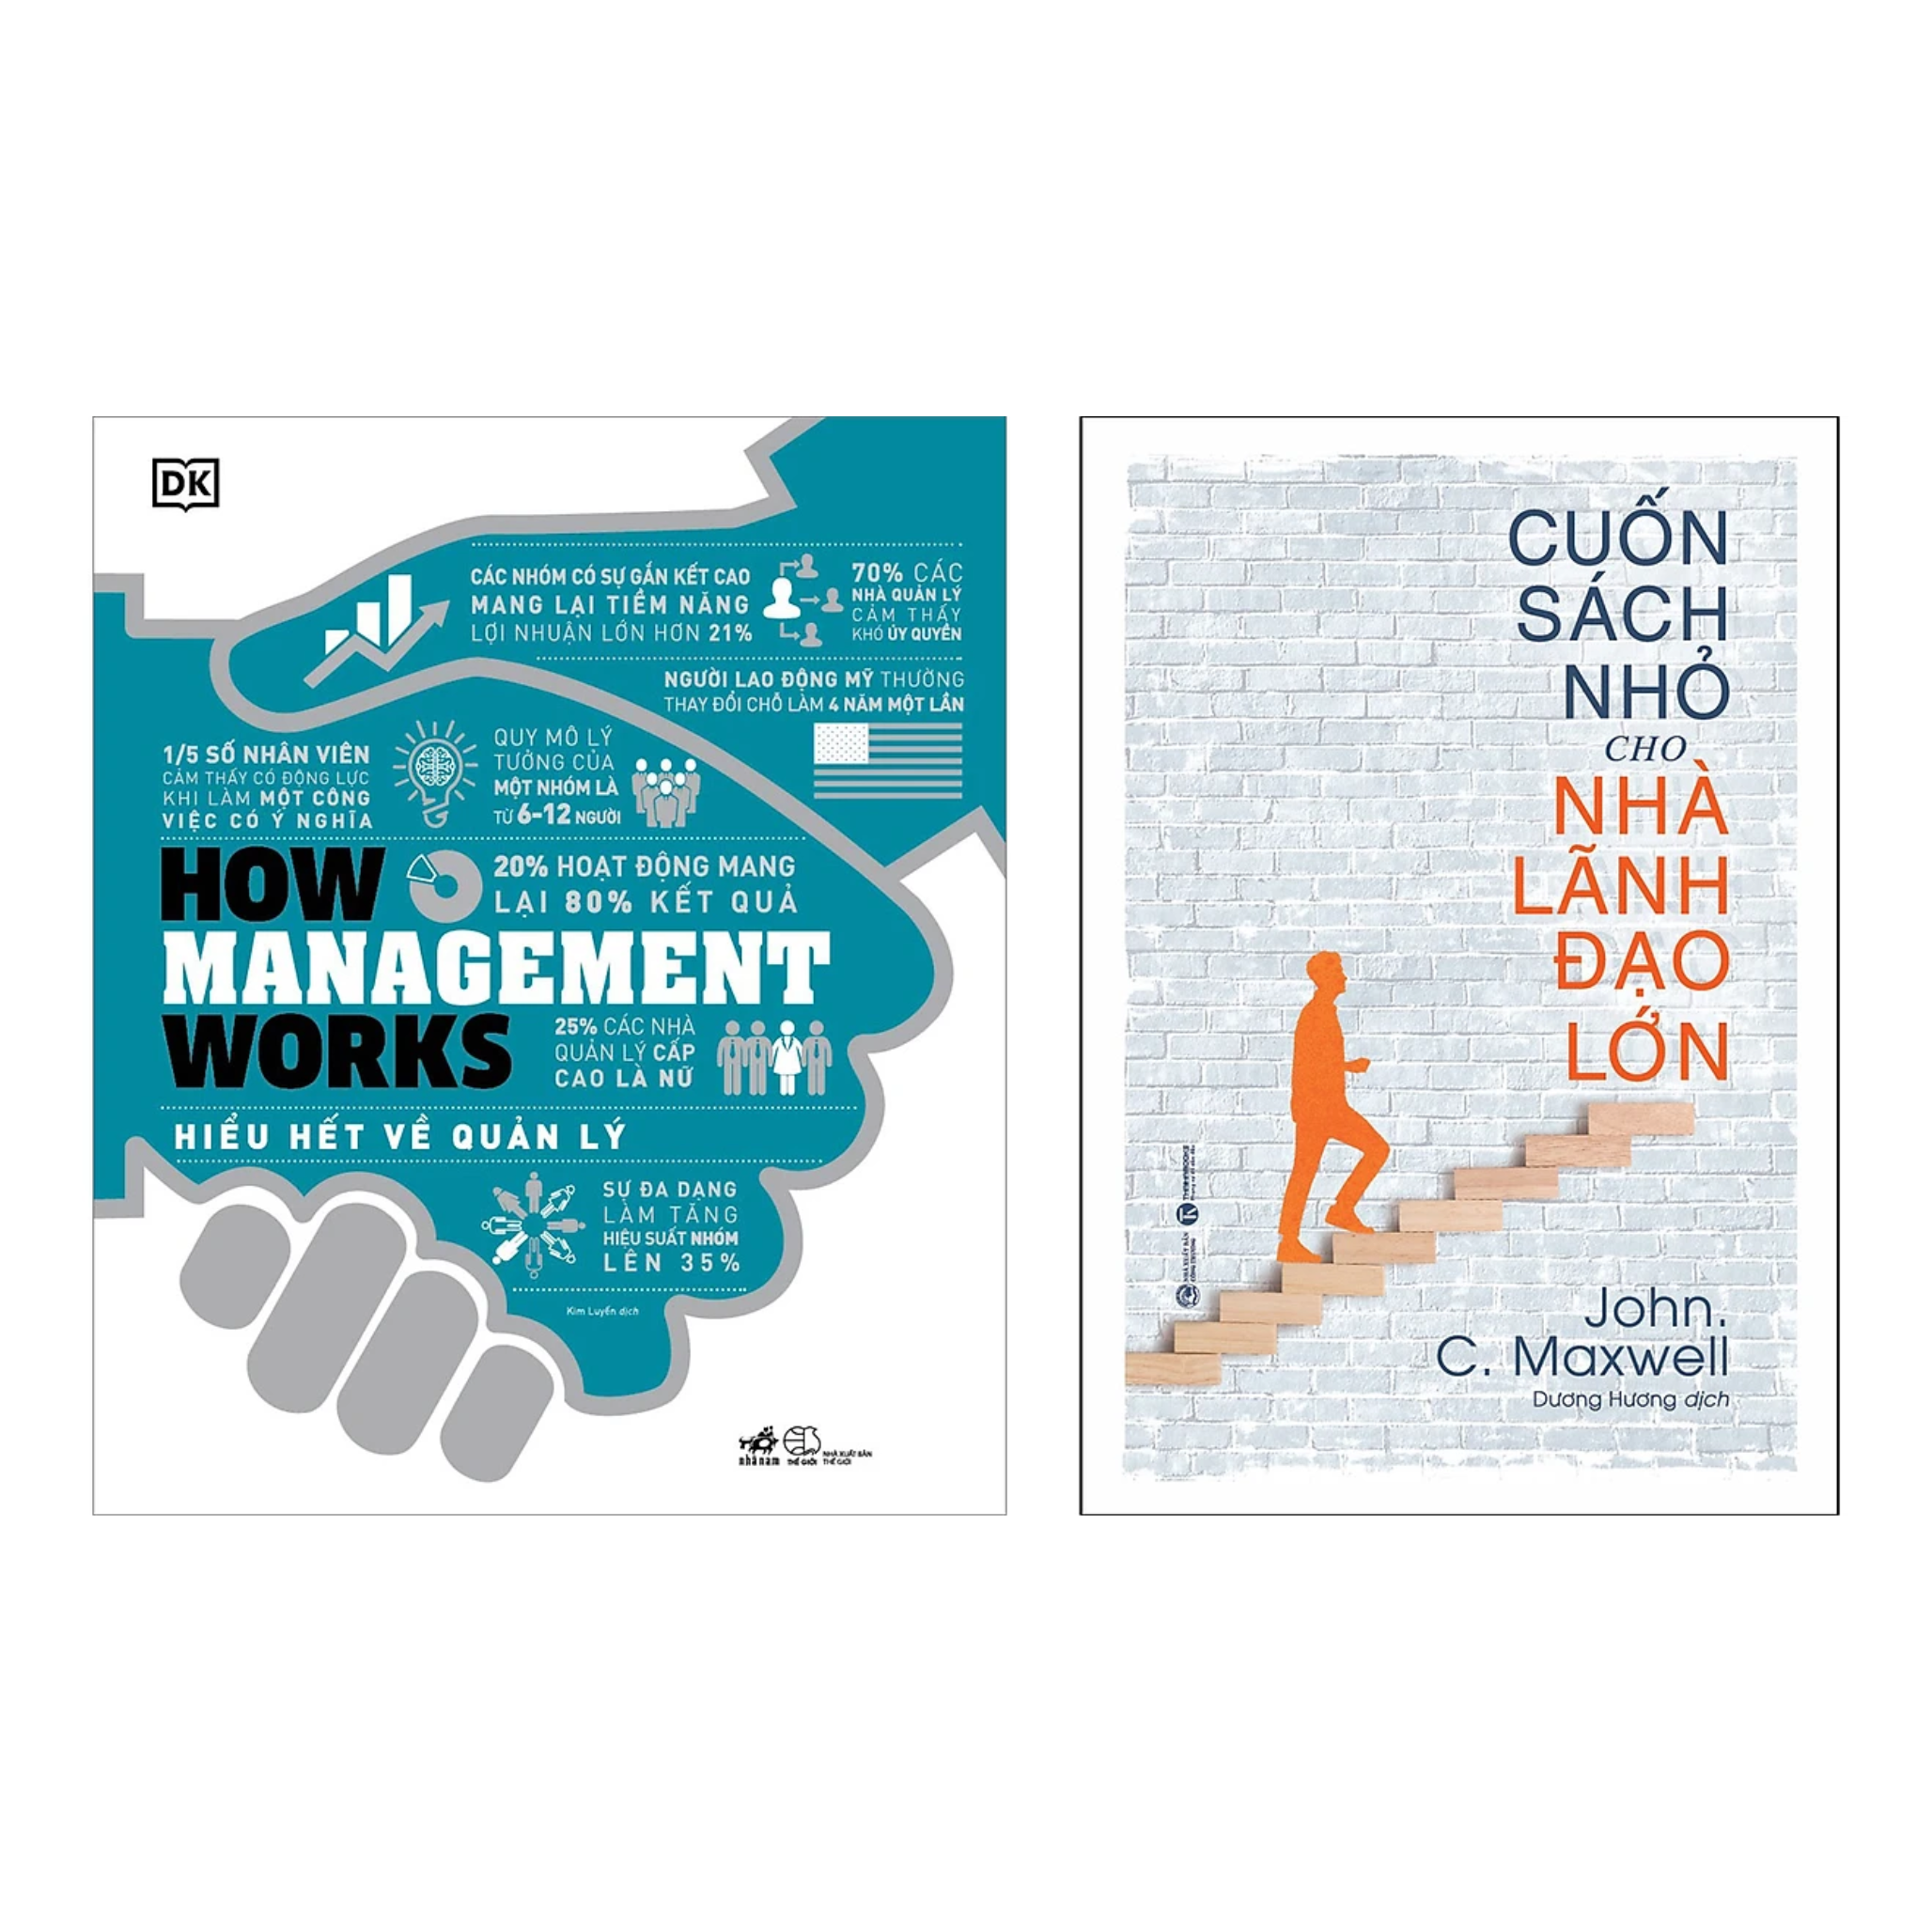 Combo 2 Cuốn Sách Lãnh Đạo: How Management Works - Hiểu Hết Về Quản Lý + Cuốn Sách Nhỏ Cho Nhà Lãnh Đạo Lớn